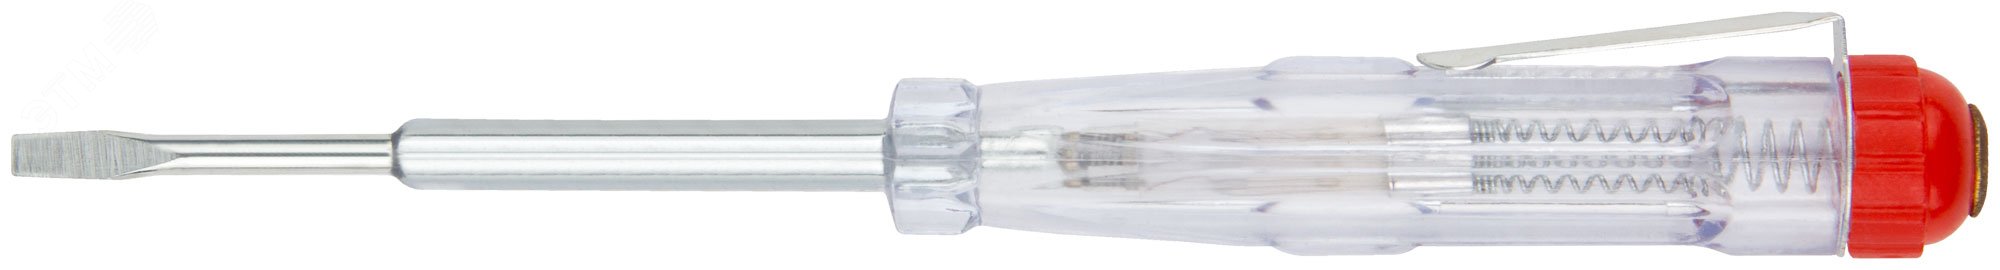 Отвертка индикаторная, белая ручка 100 - 500 В, 140 мм 56503 КУРС - превью